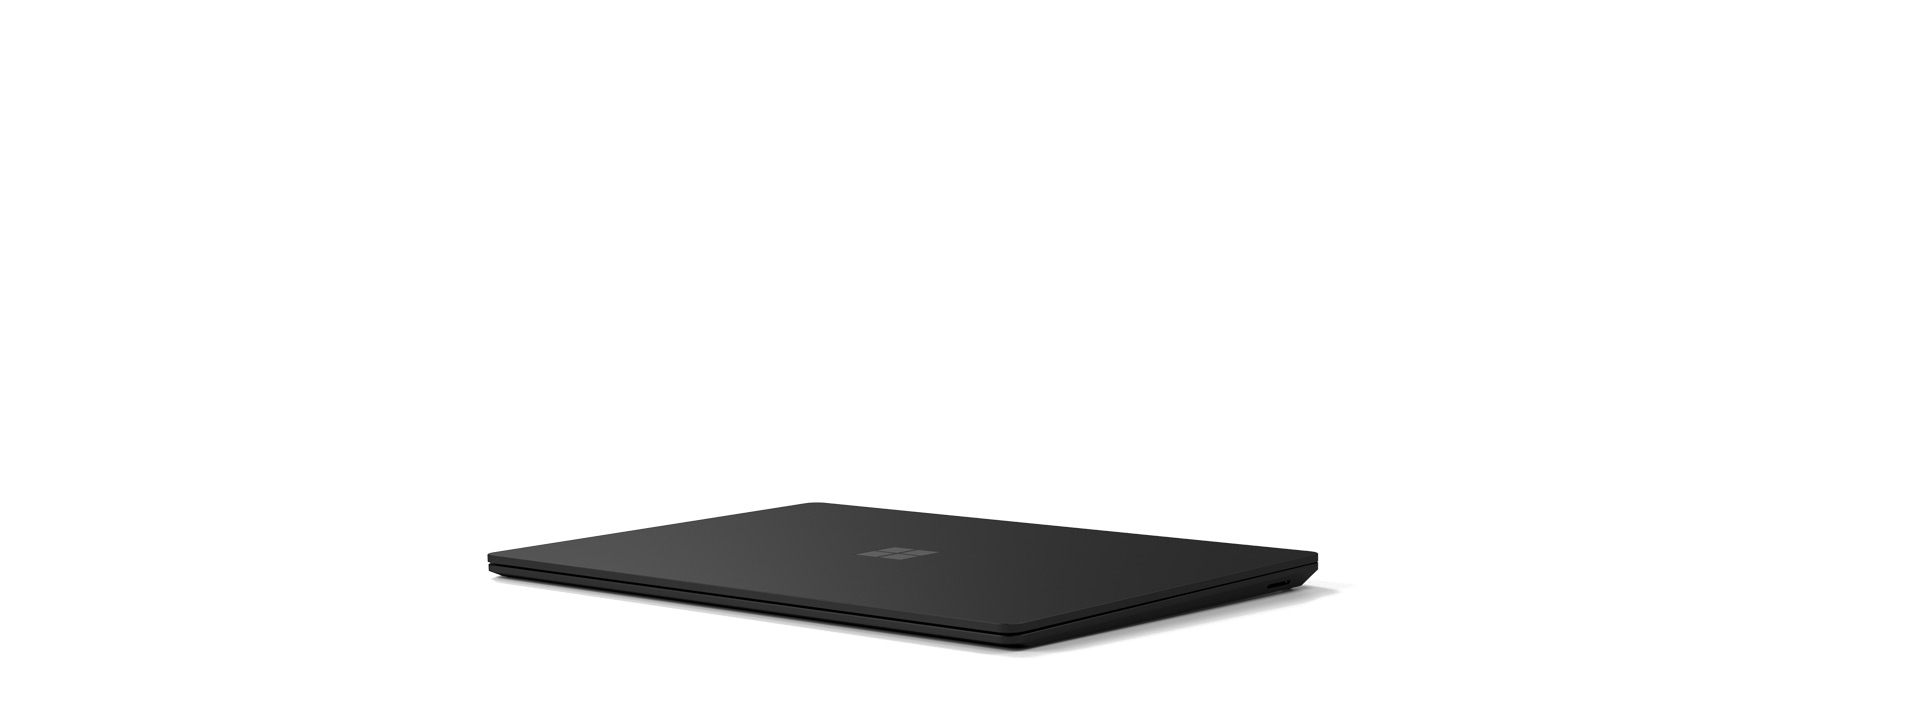 Ein geschlossenes Surface Laptop 4 wird angezeigt.